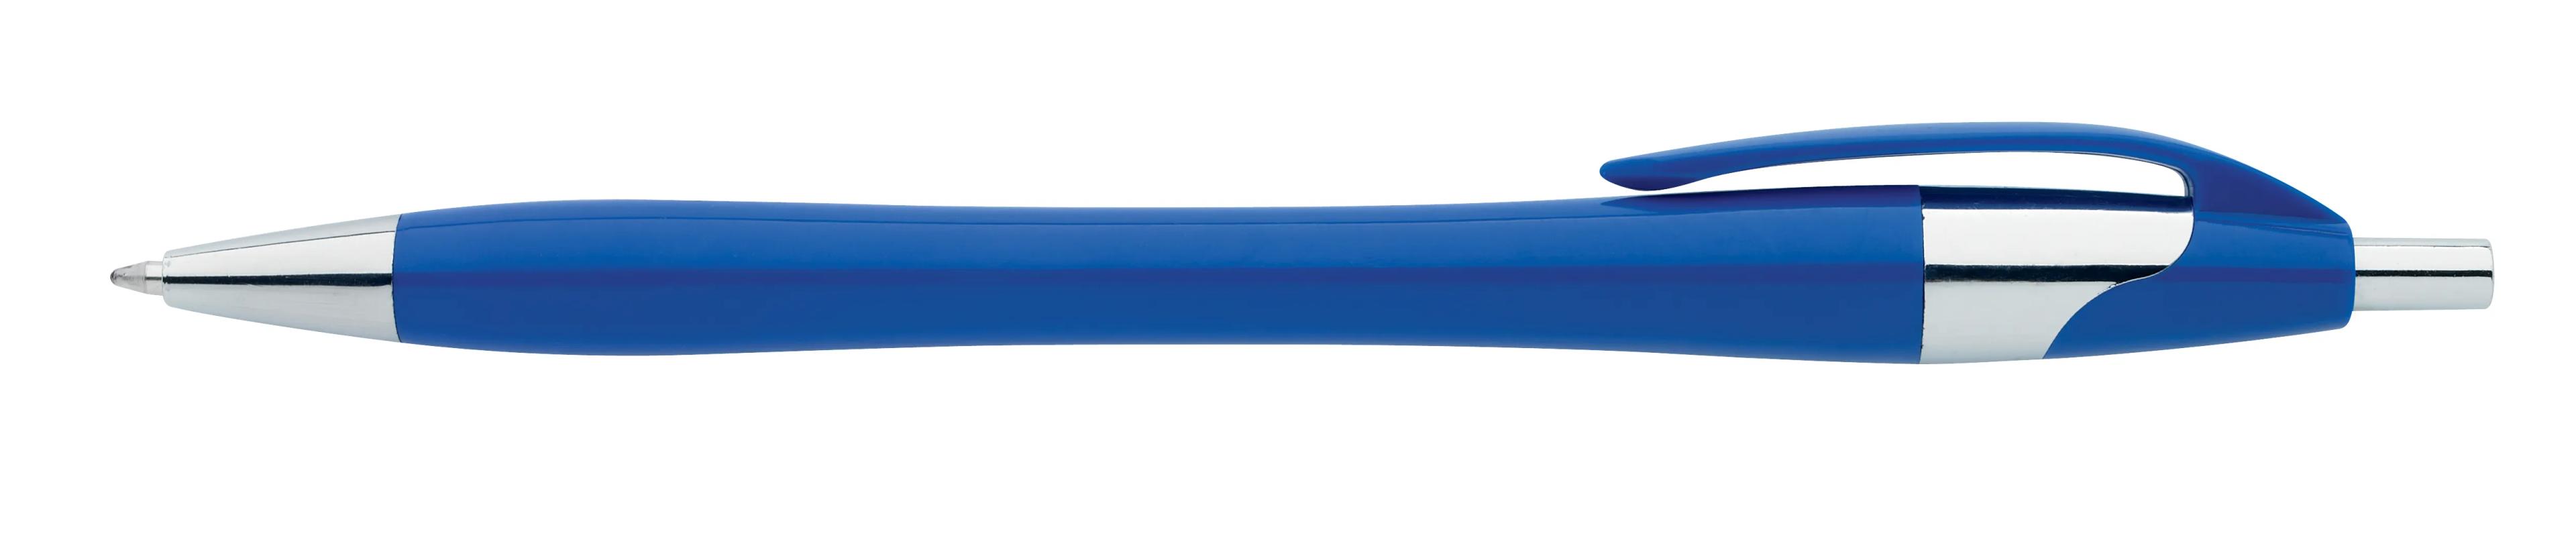 Chrome Dart Pen 7 of 32